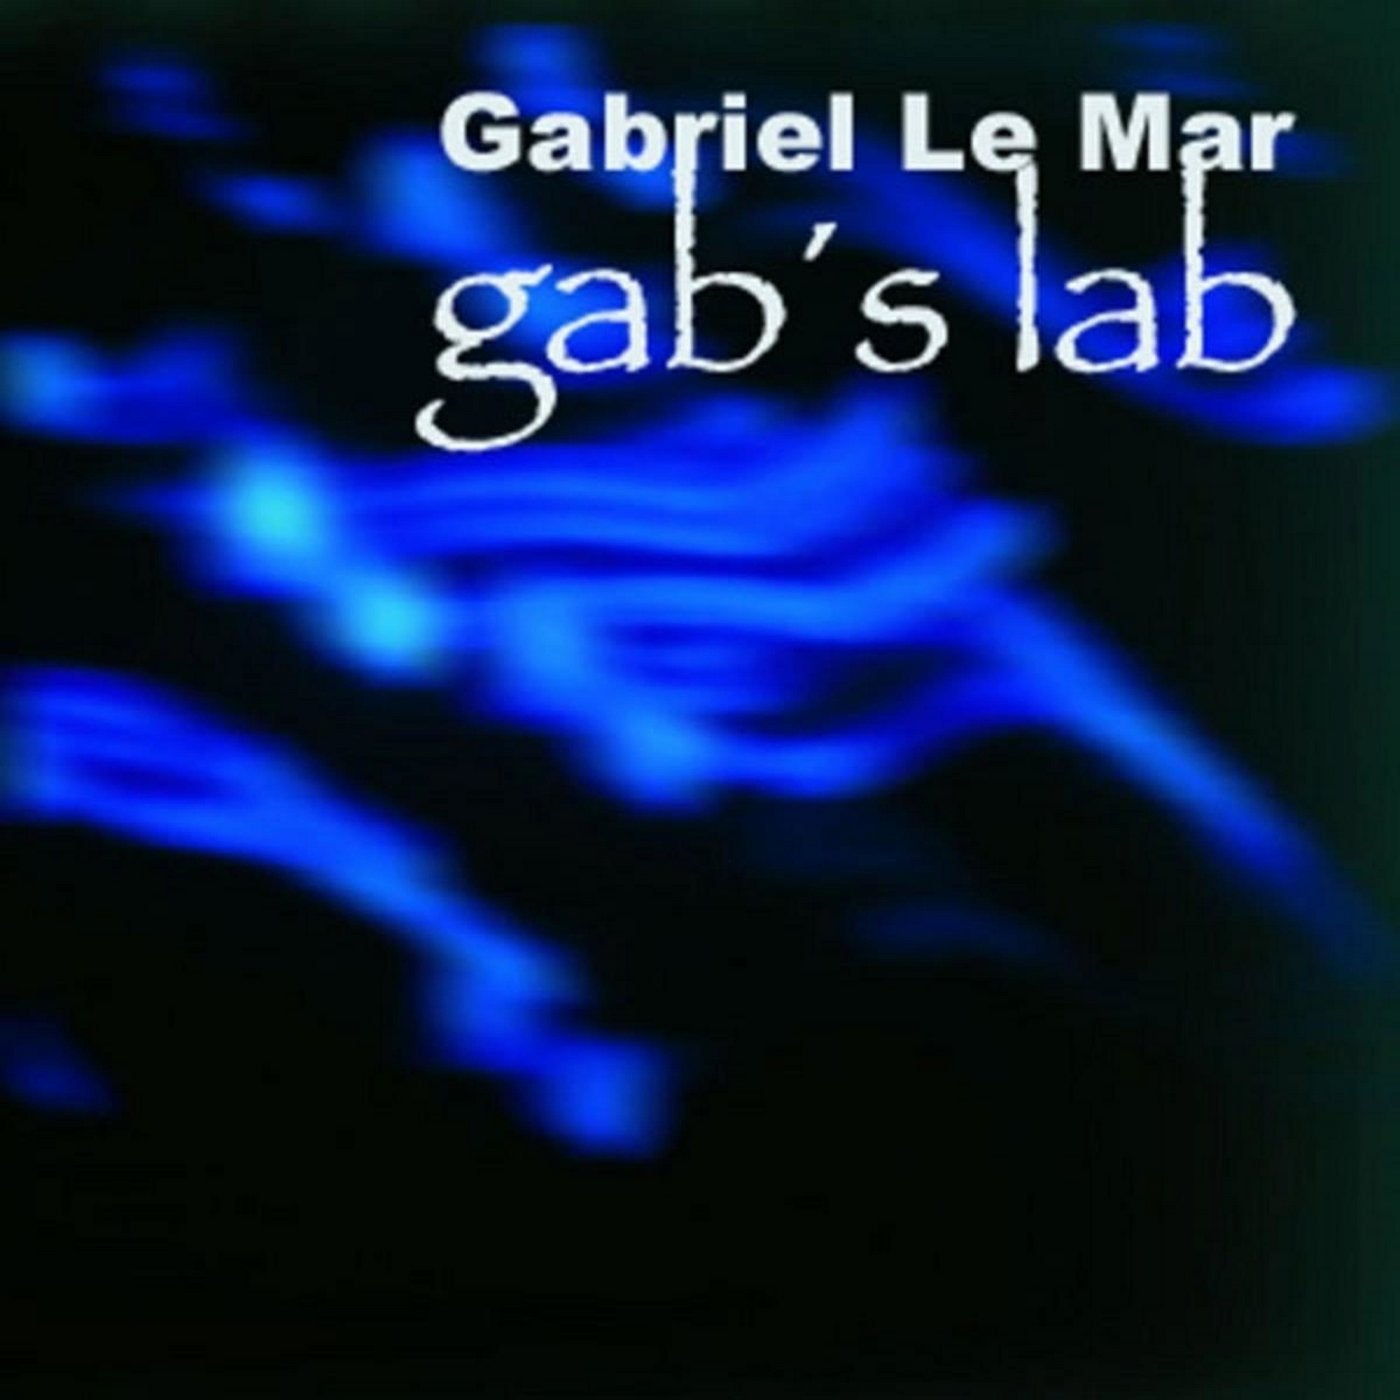 Gab's Lab